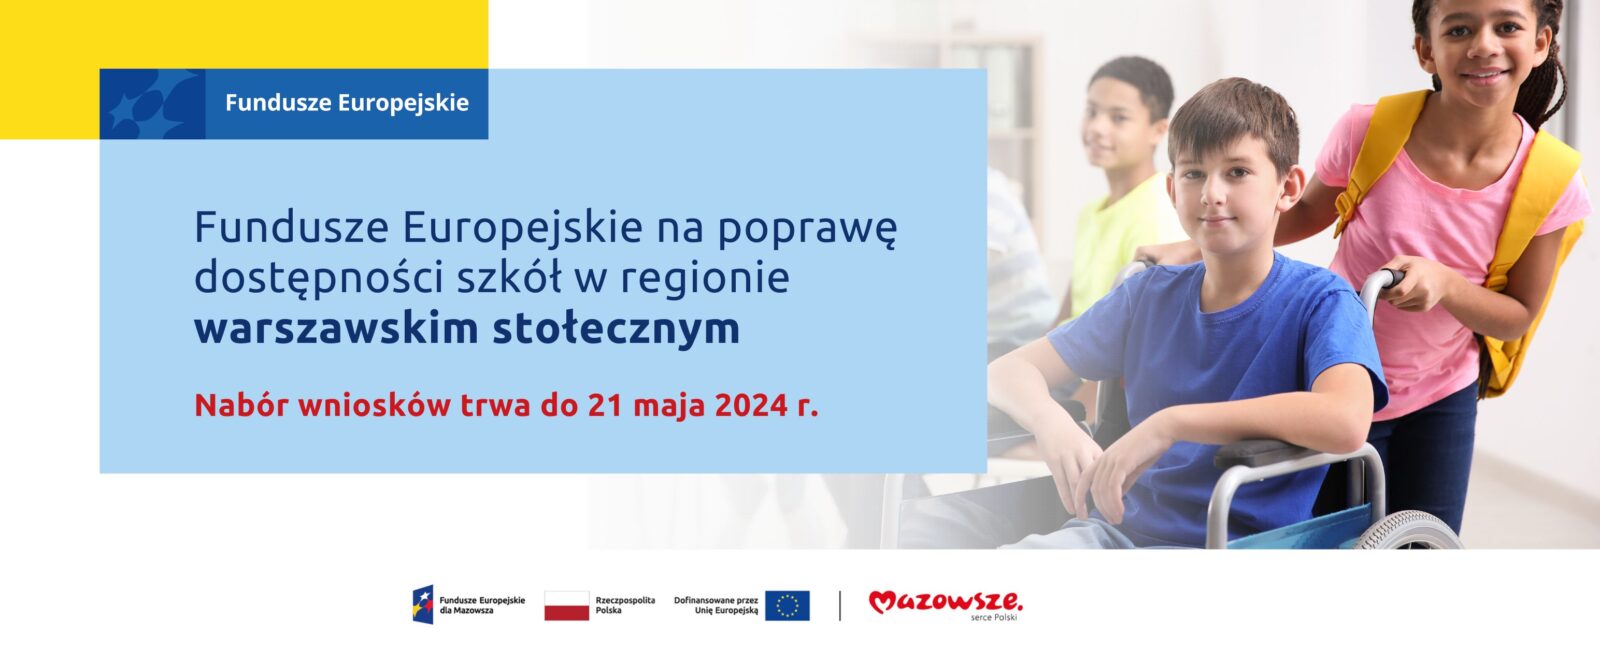 Na grafice znajduje się hasło: Fundusze europejskie na poprawę dostępności szkół w regionie mazowieckim regionalnym. Nabór wniosków trwa do 22 maja 2024 r. W tle zdjęcie dwóch dziewczynek biegnących w kierunku dziewczynki na wózku inwalidzkim.